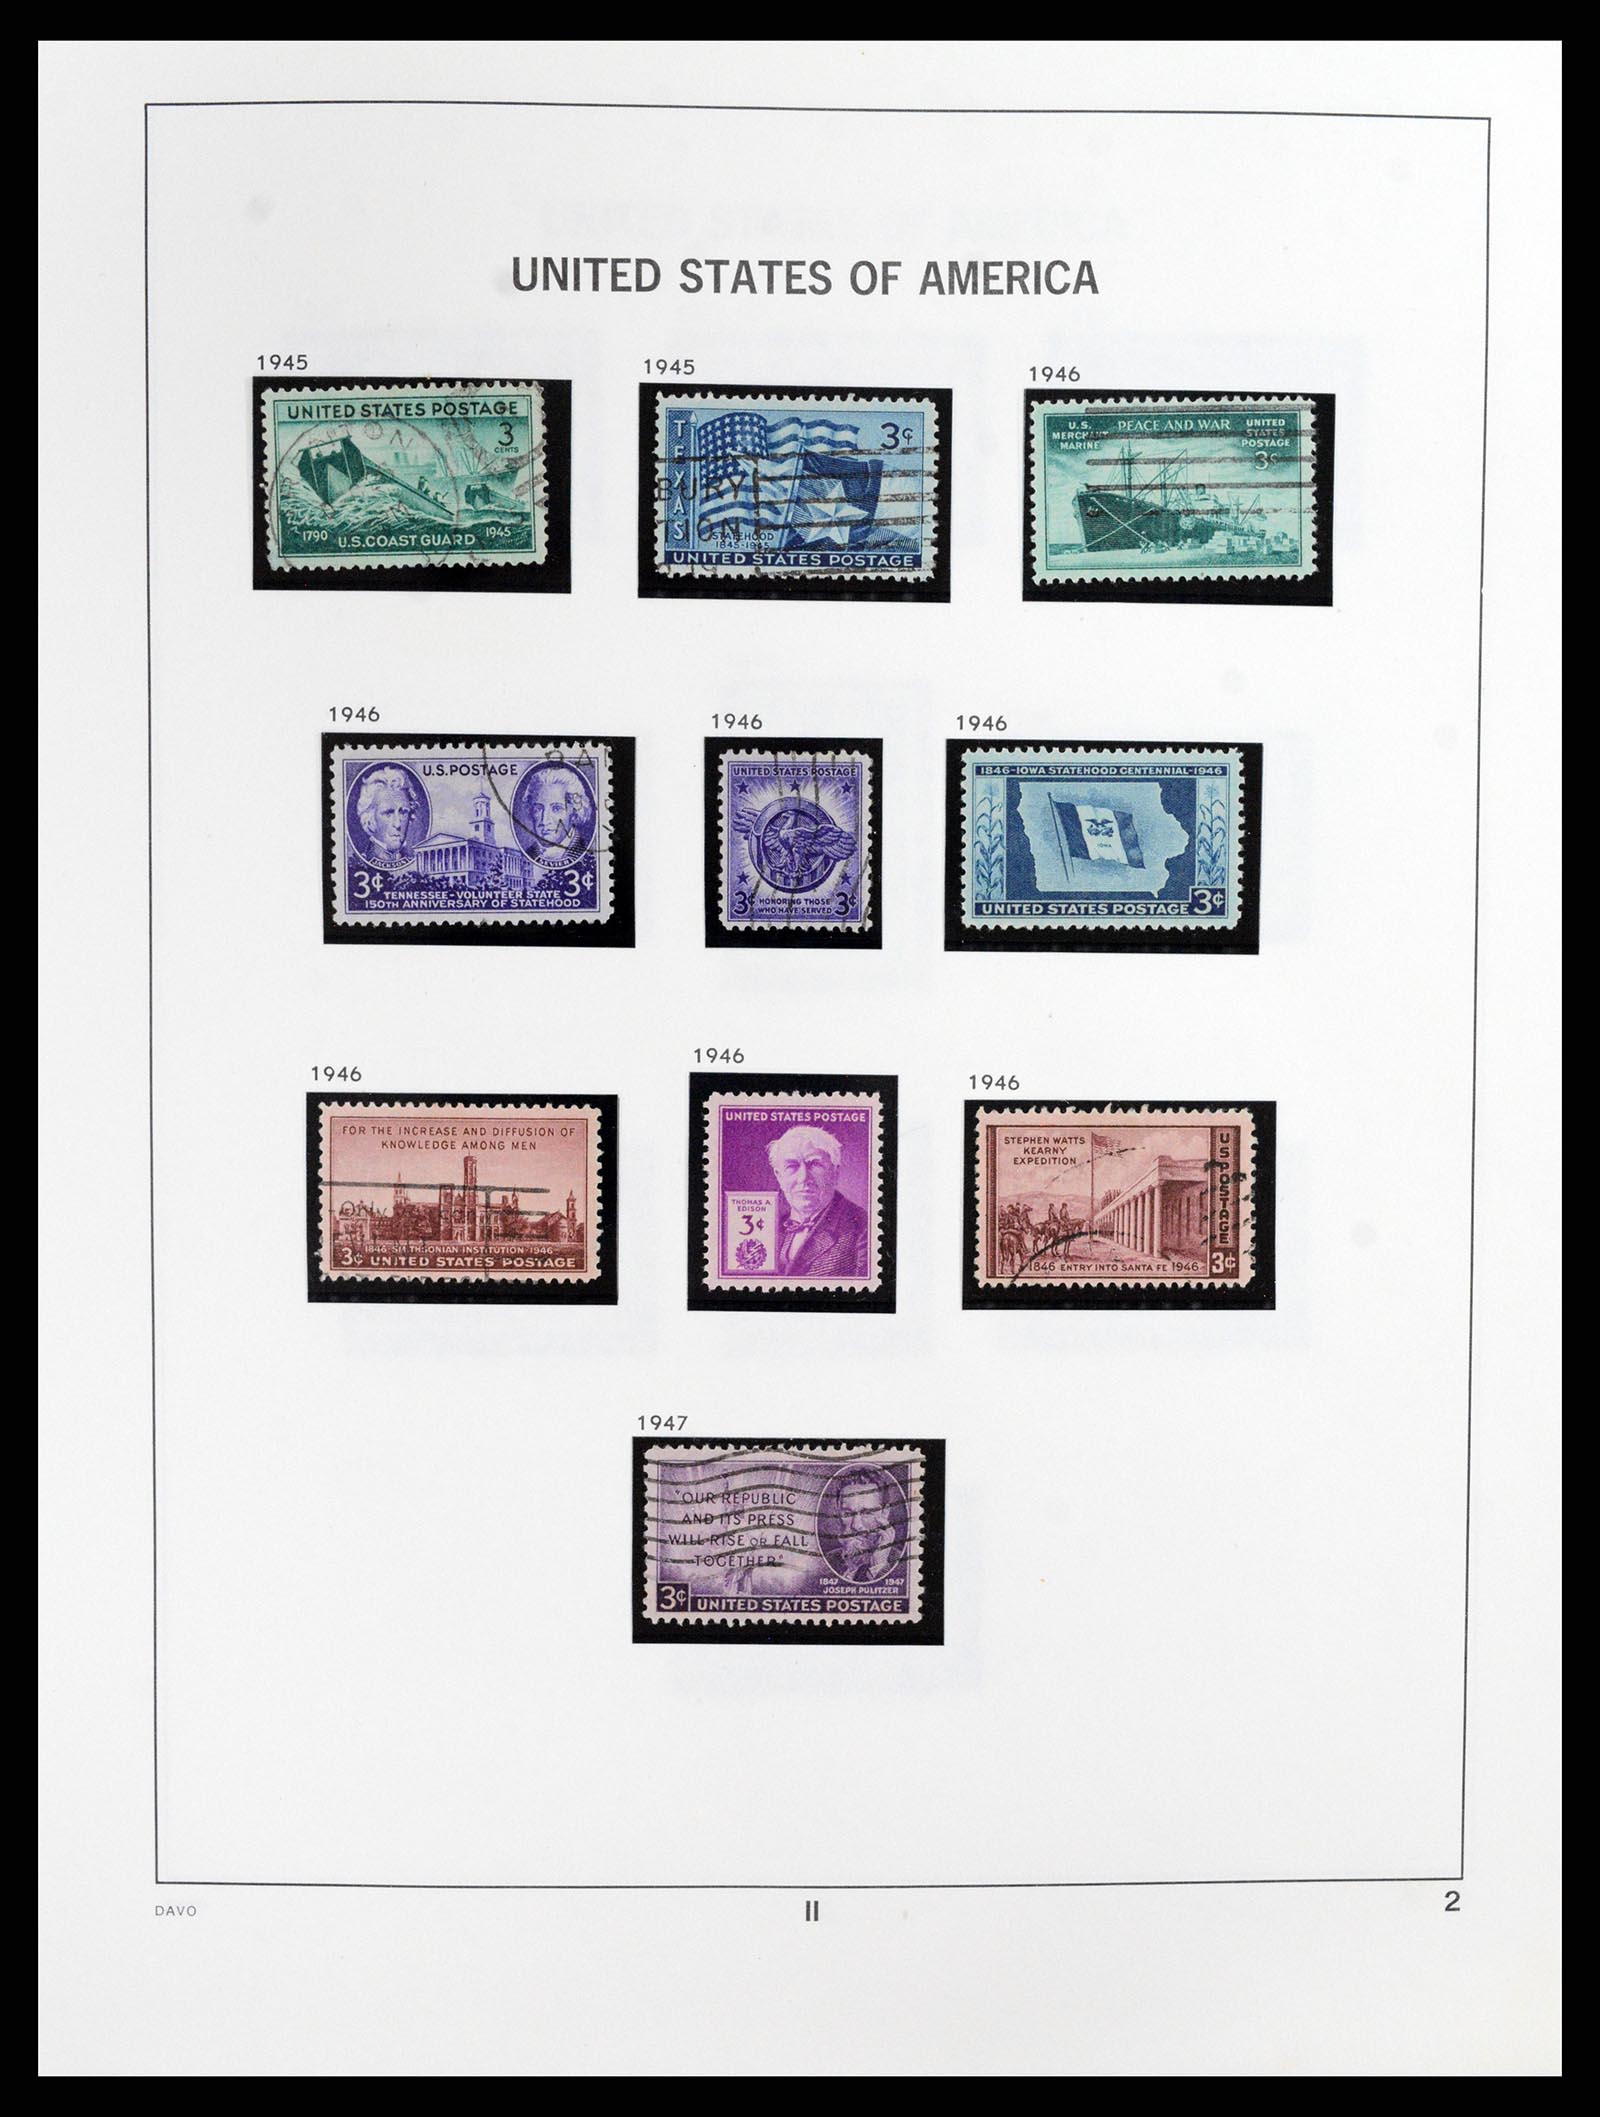 37357 002 - Stamp collection 37357 USA 1945-2009.